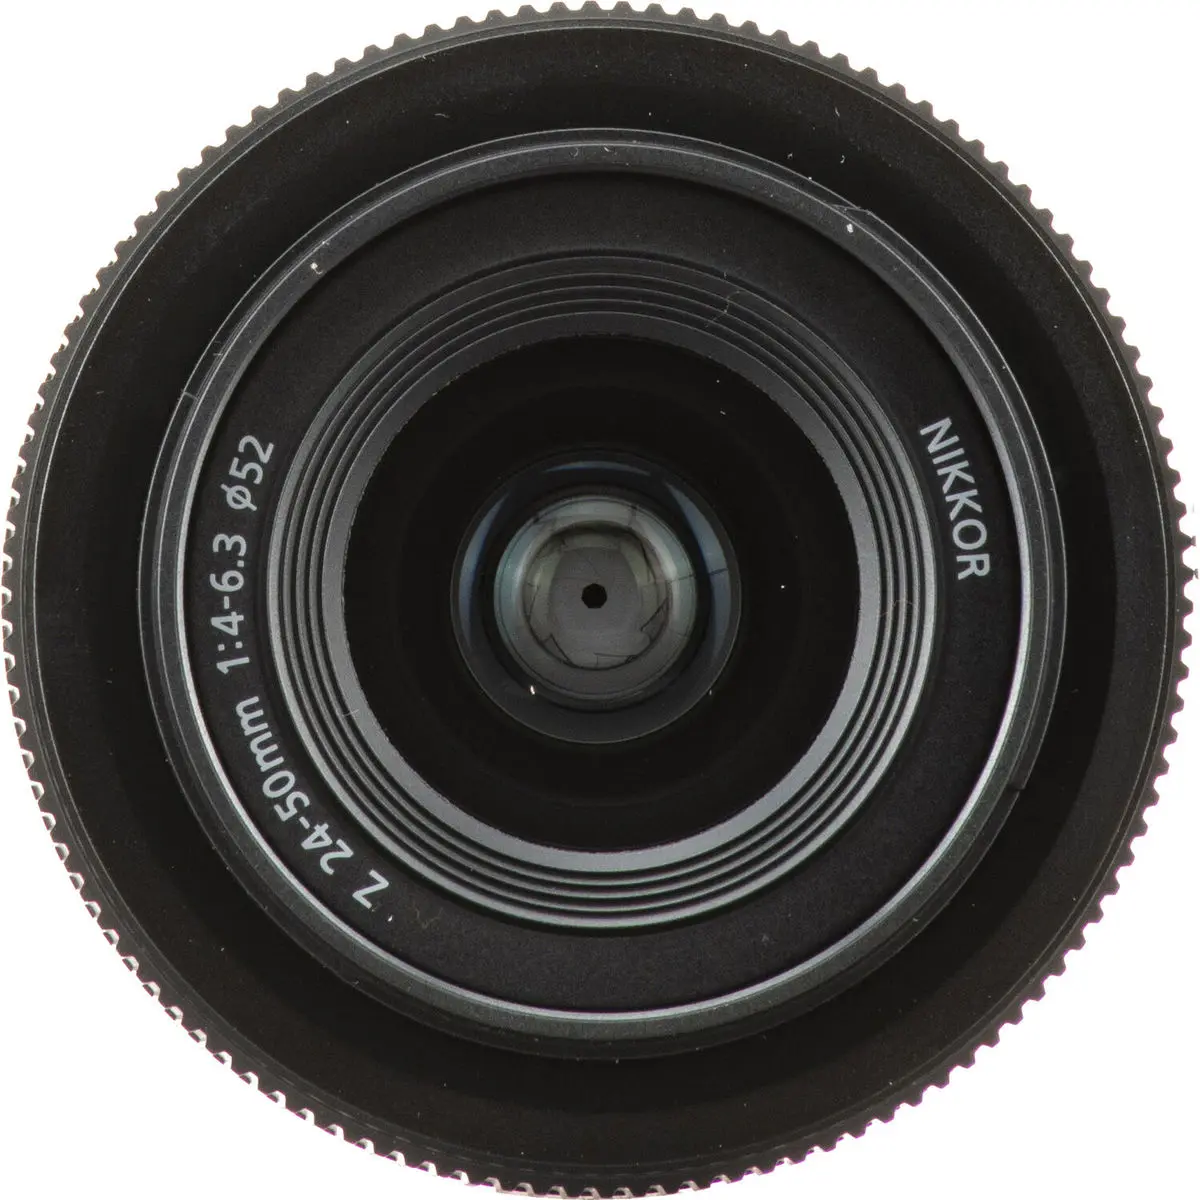 4. Nikon NIKKOR Z 24-50MM F/4-6.3 (kit lens)